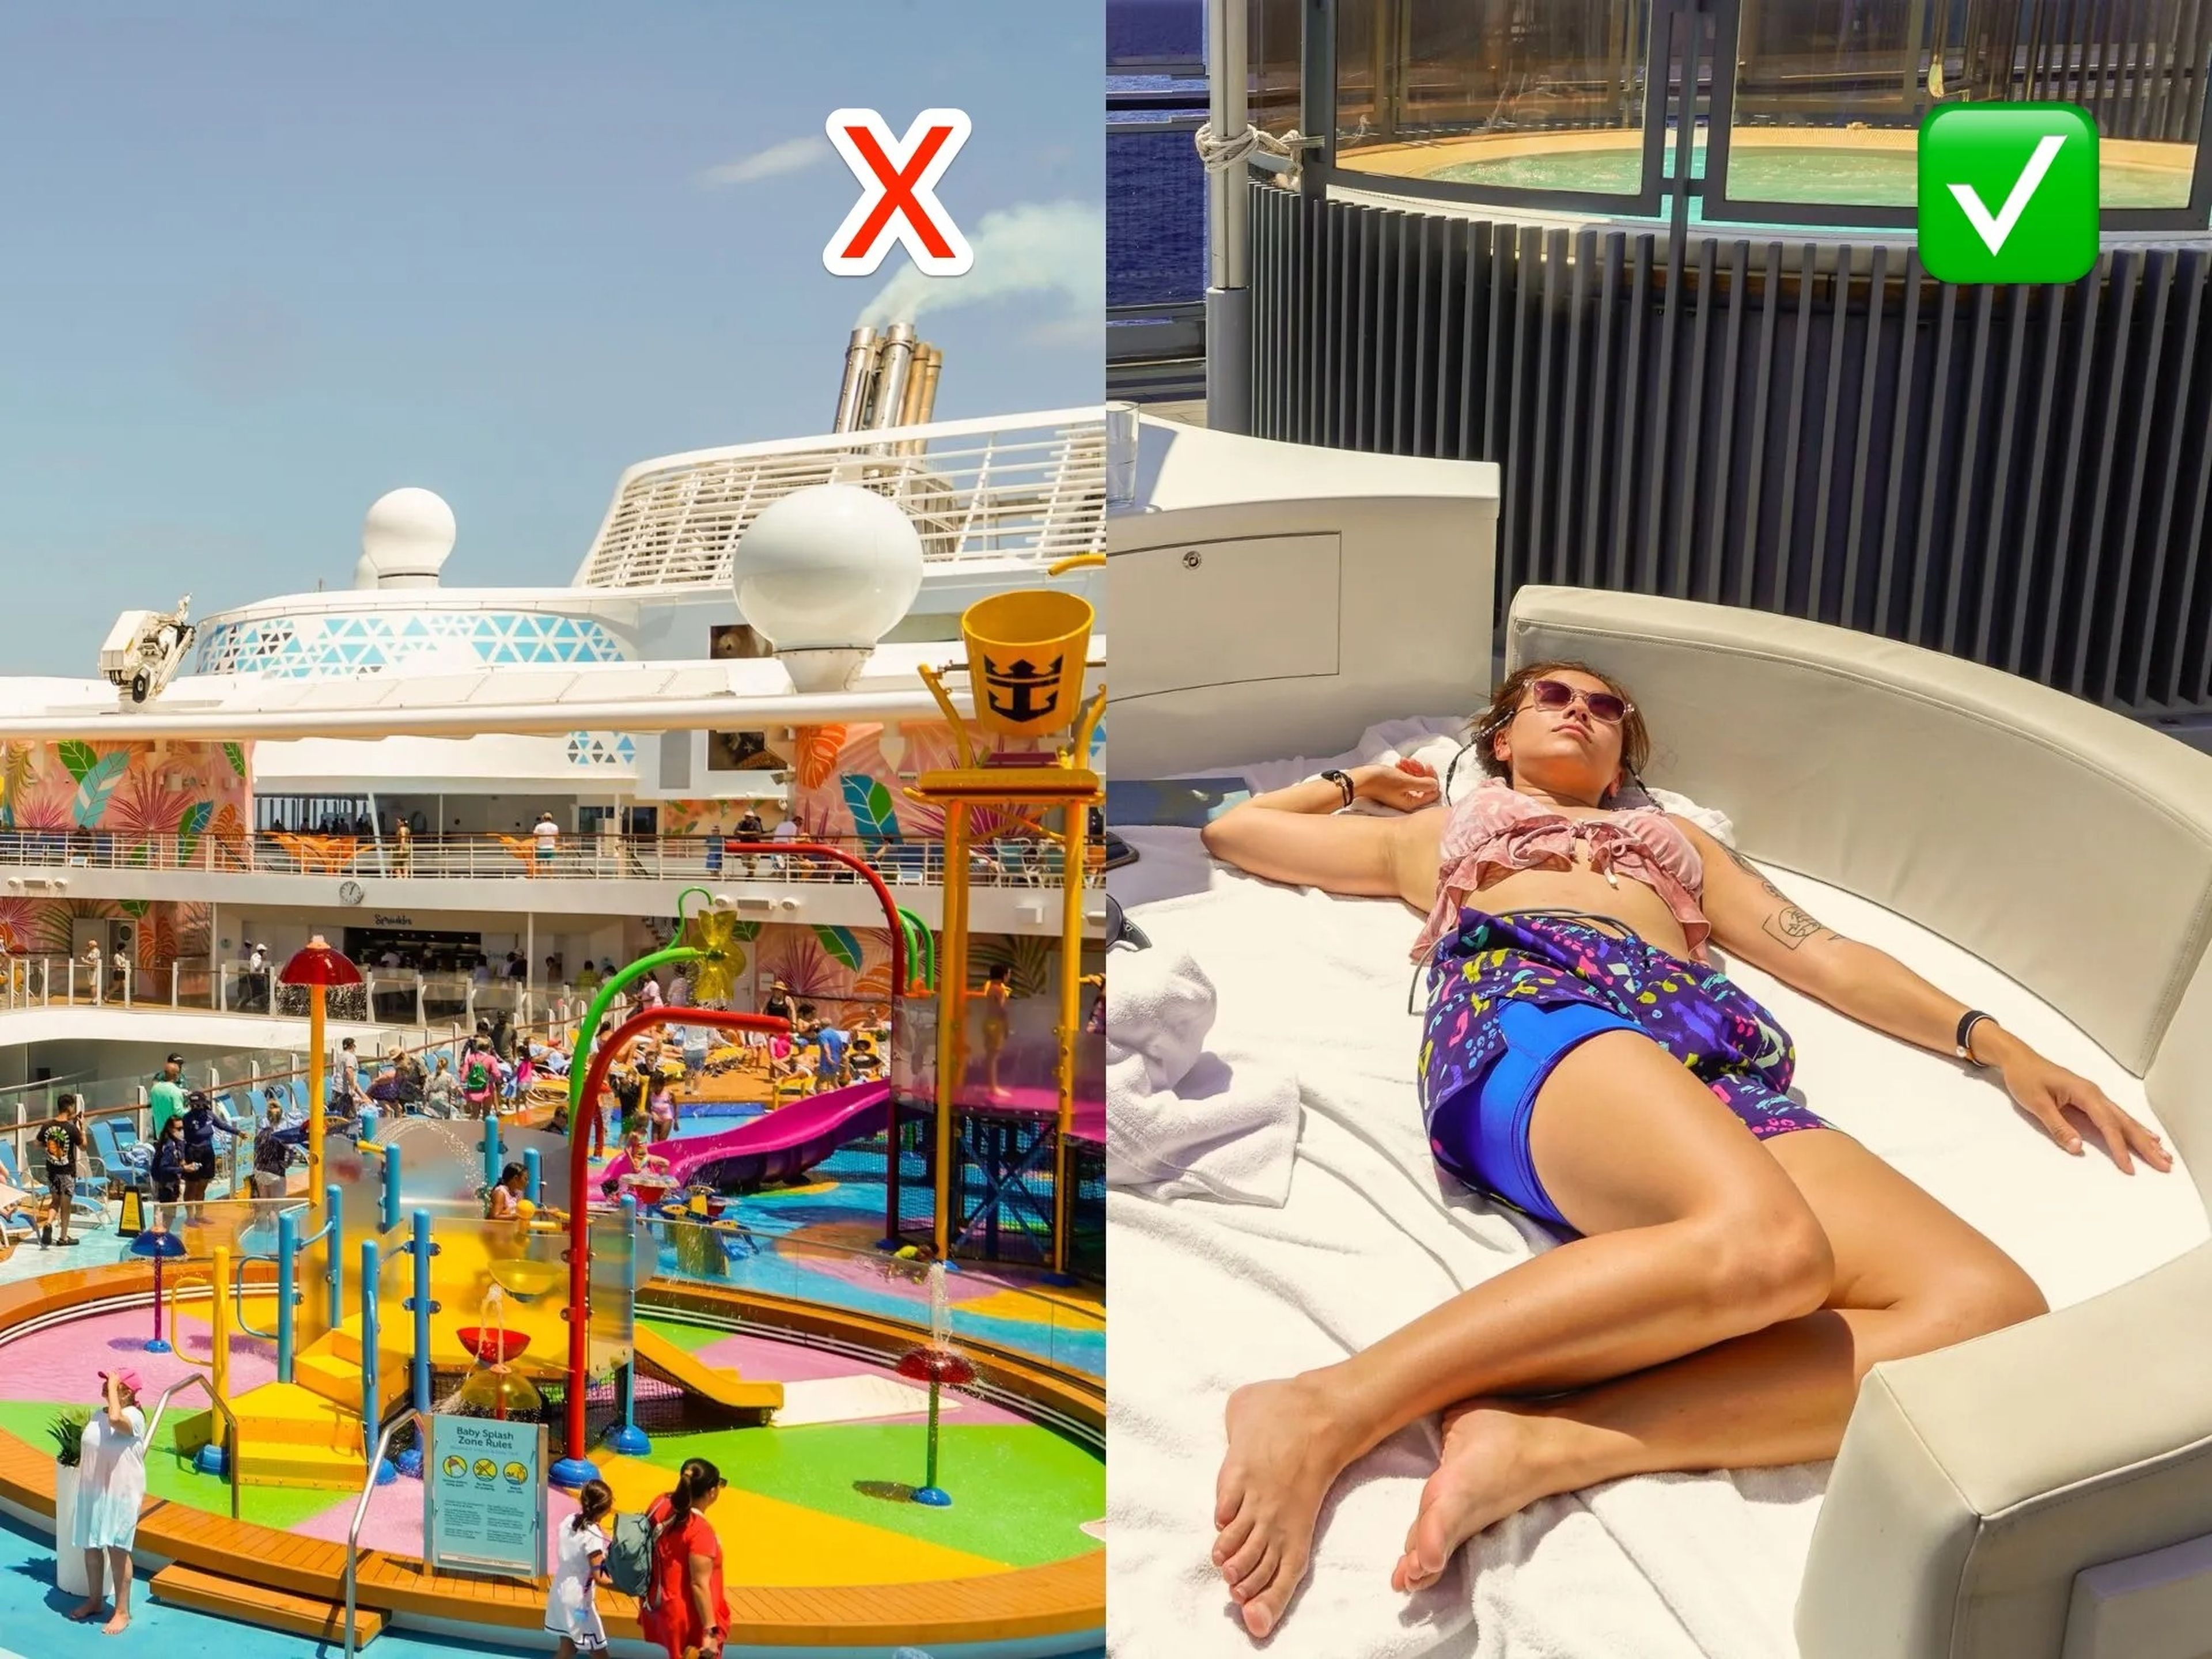 La periodista de viajes de Business Insider descubrió que los cruceros solo para adultos son más agradables tras comparar los cruceros de Royal Caribbean y Virgin Voyages..